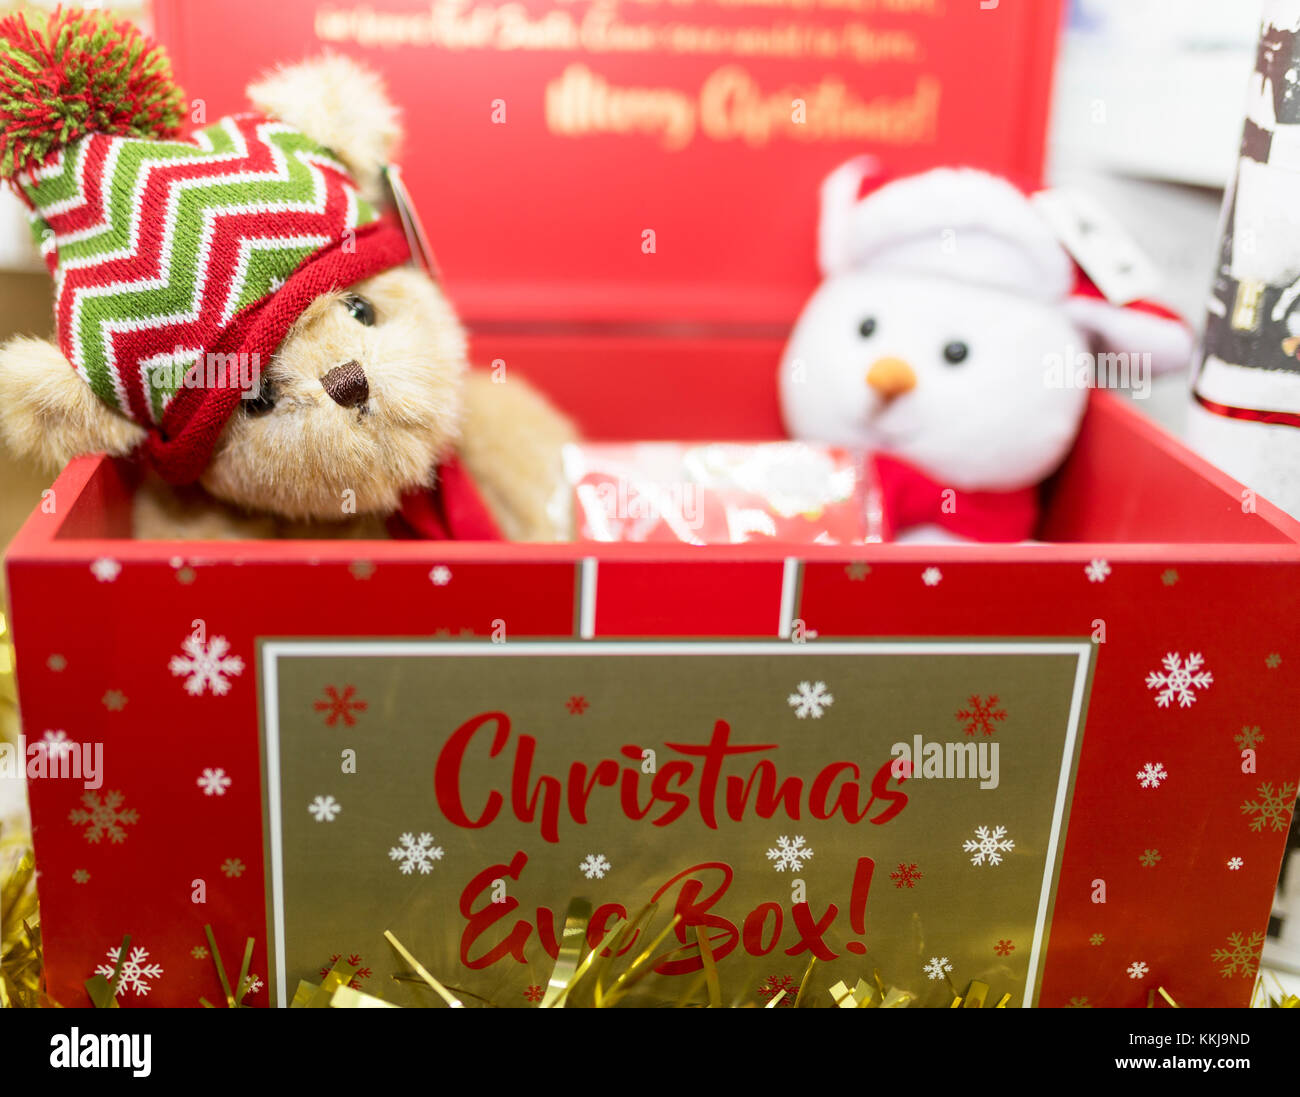 Vintage marrone festosa orsacchiotto di peluche che indossa un cappellino in un rosso Natale confezione regalo con un morbido peluche pupazzo di neve nel Regno Unito Foto Stock